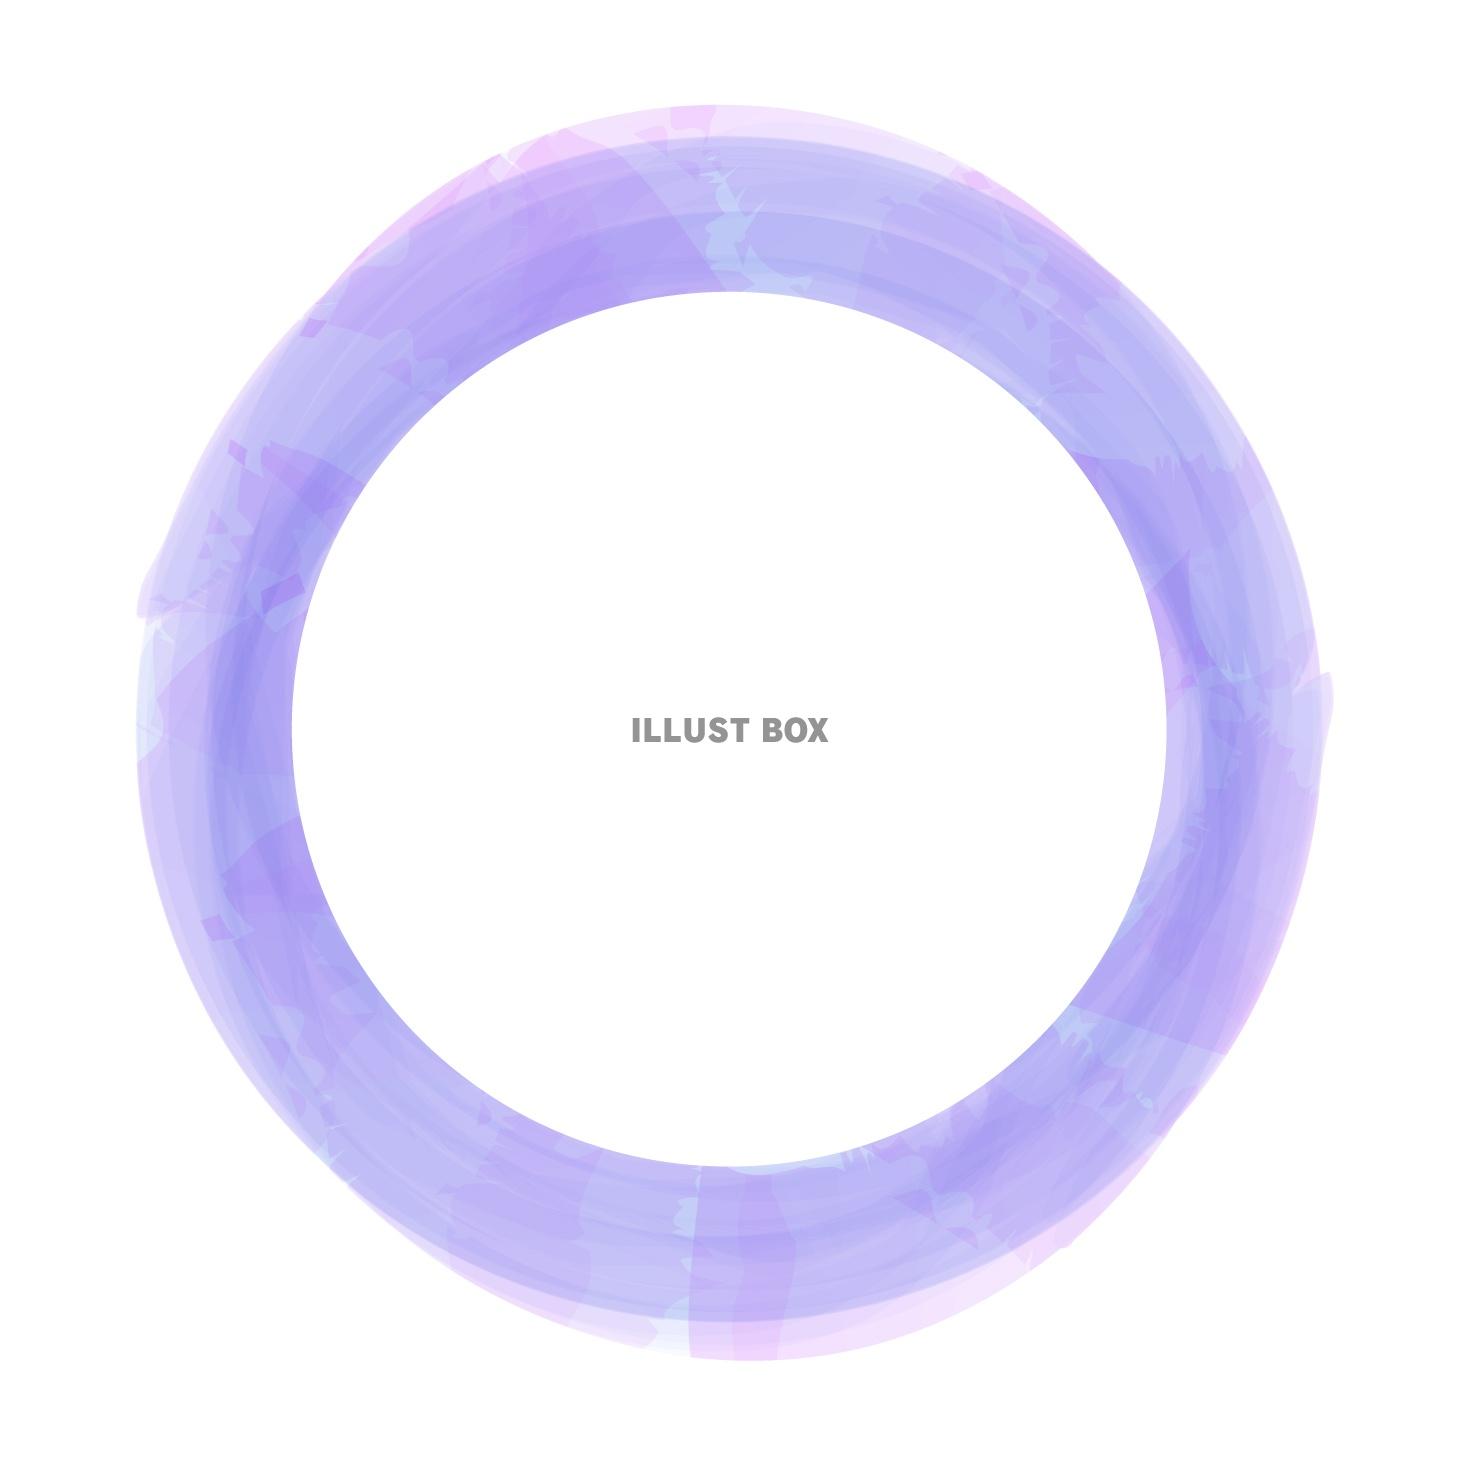 水彩風の円形のフレーム・紫